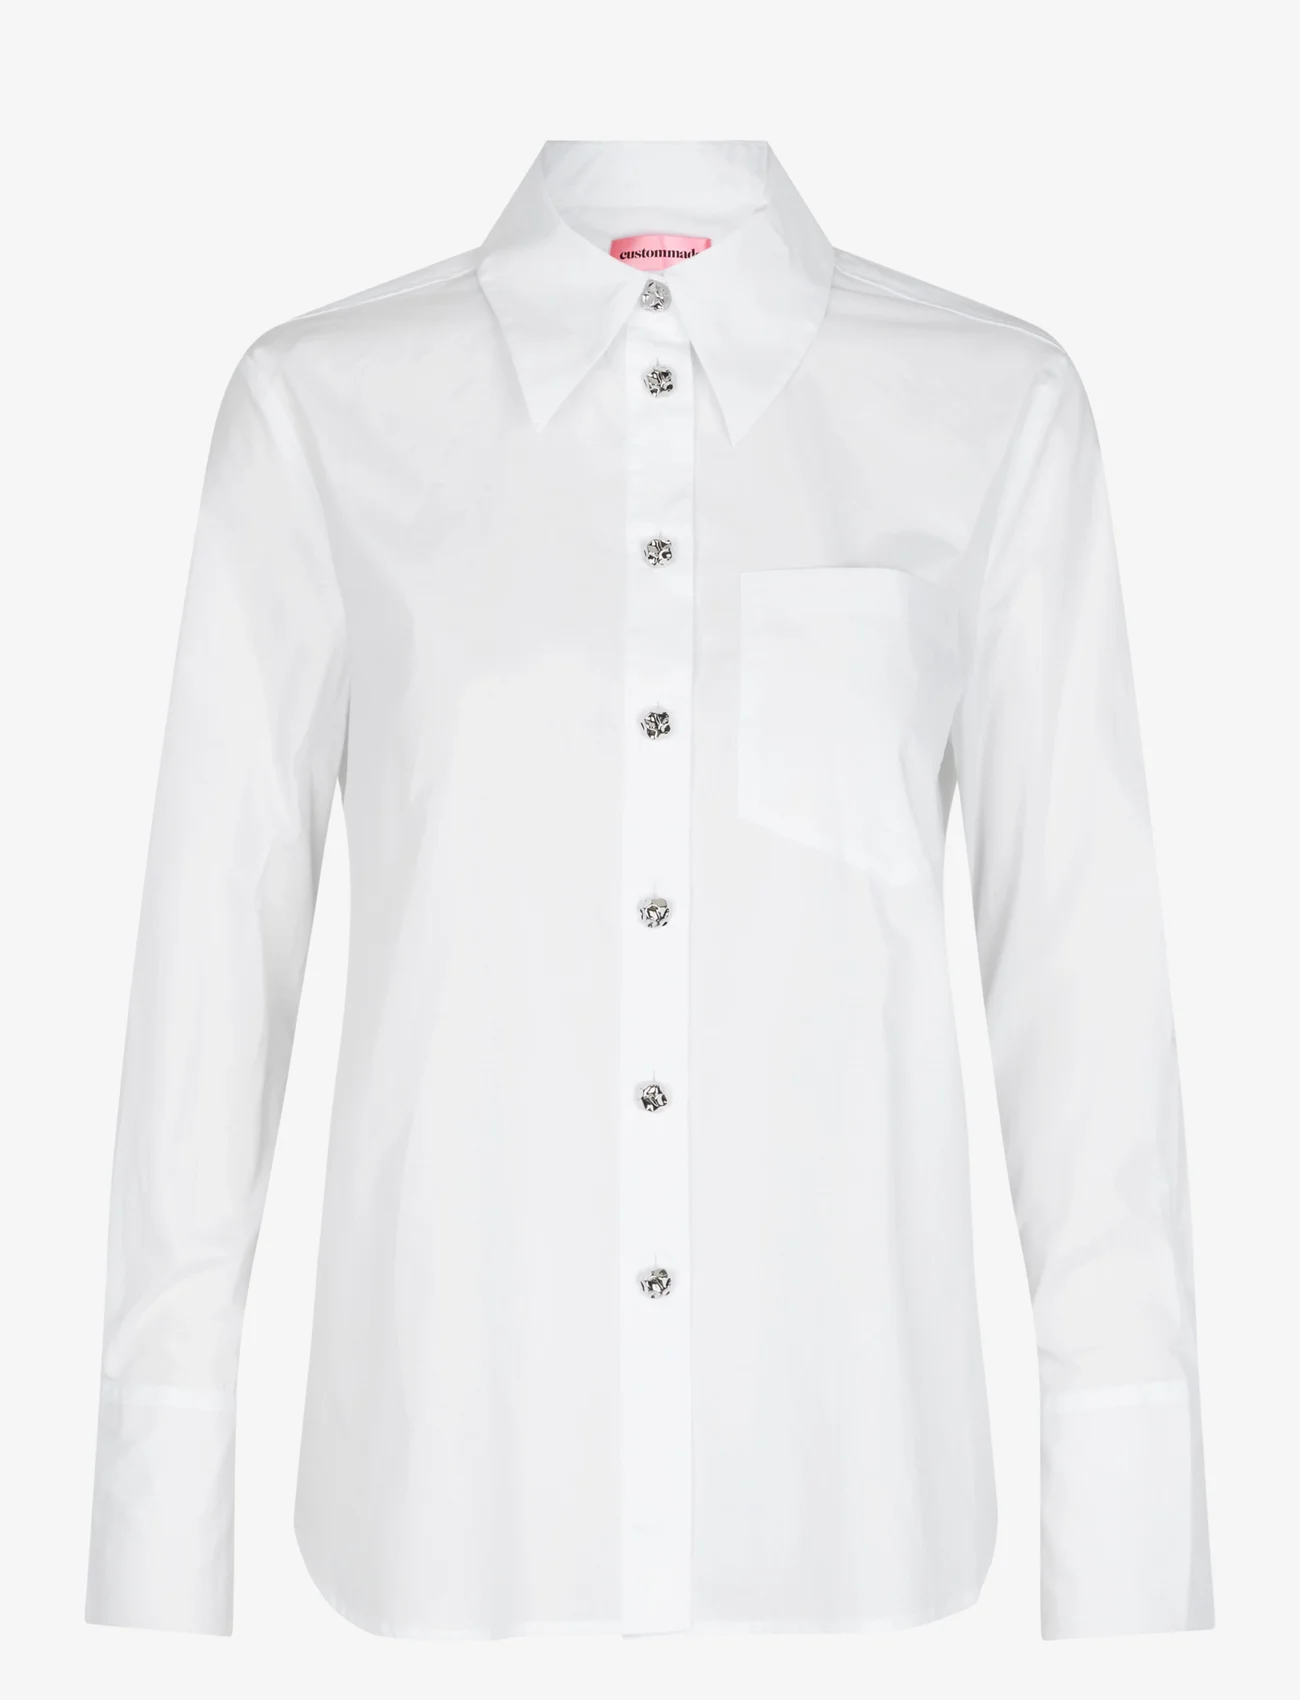 Custommade - Bri Solid - pitkähihaiset paidat - 001 bright white - 0